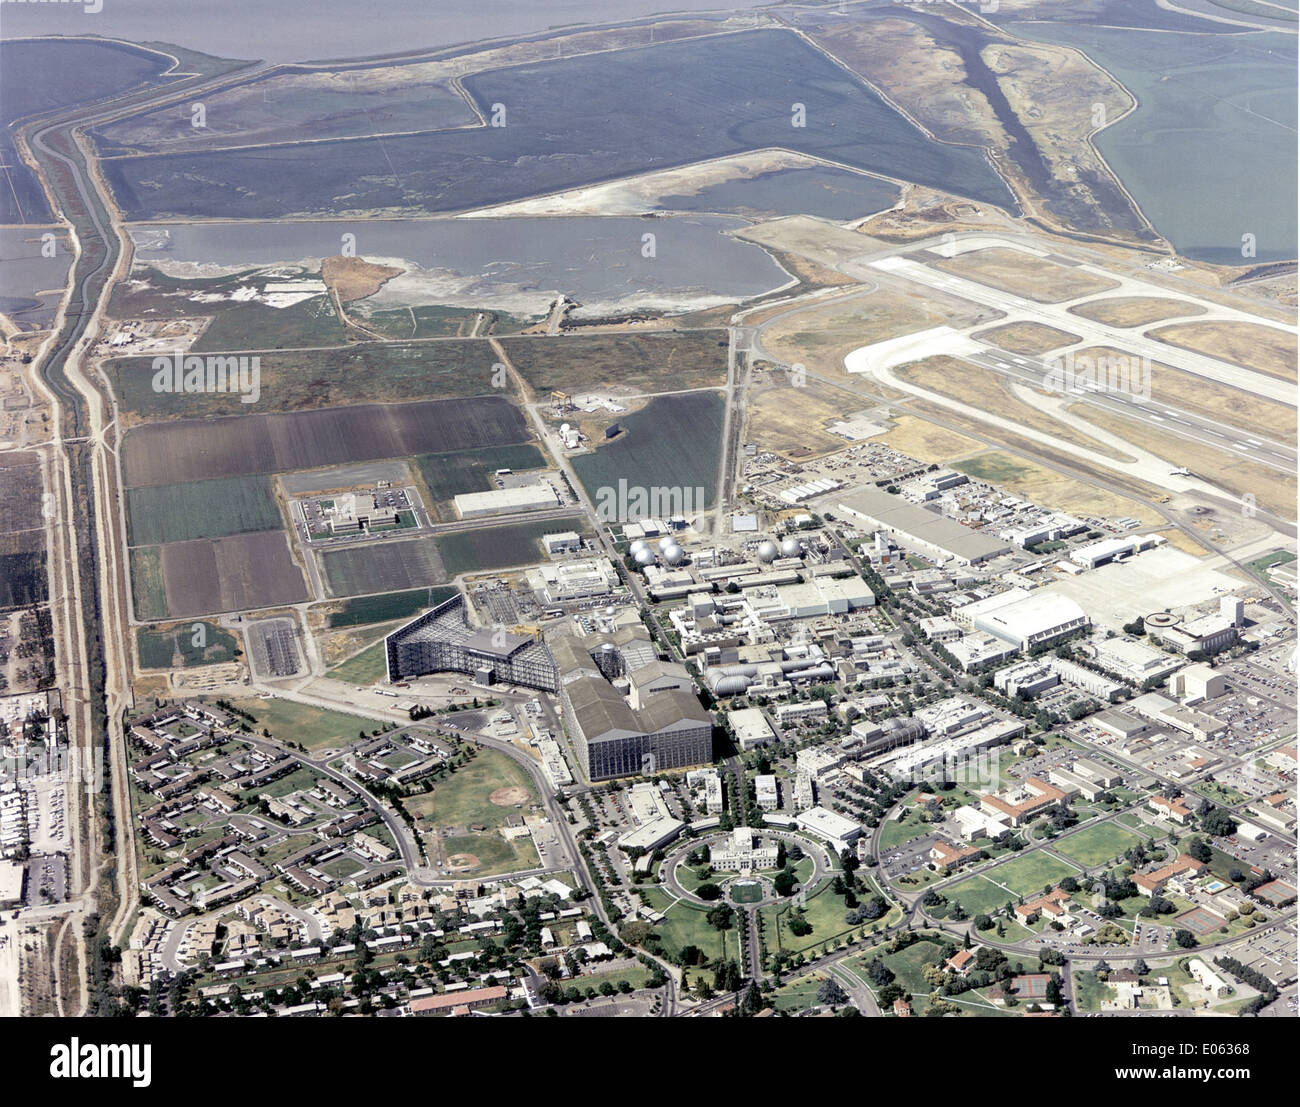 Vue aérienne de NASA Ames Research Center Banque D'Images